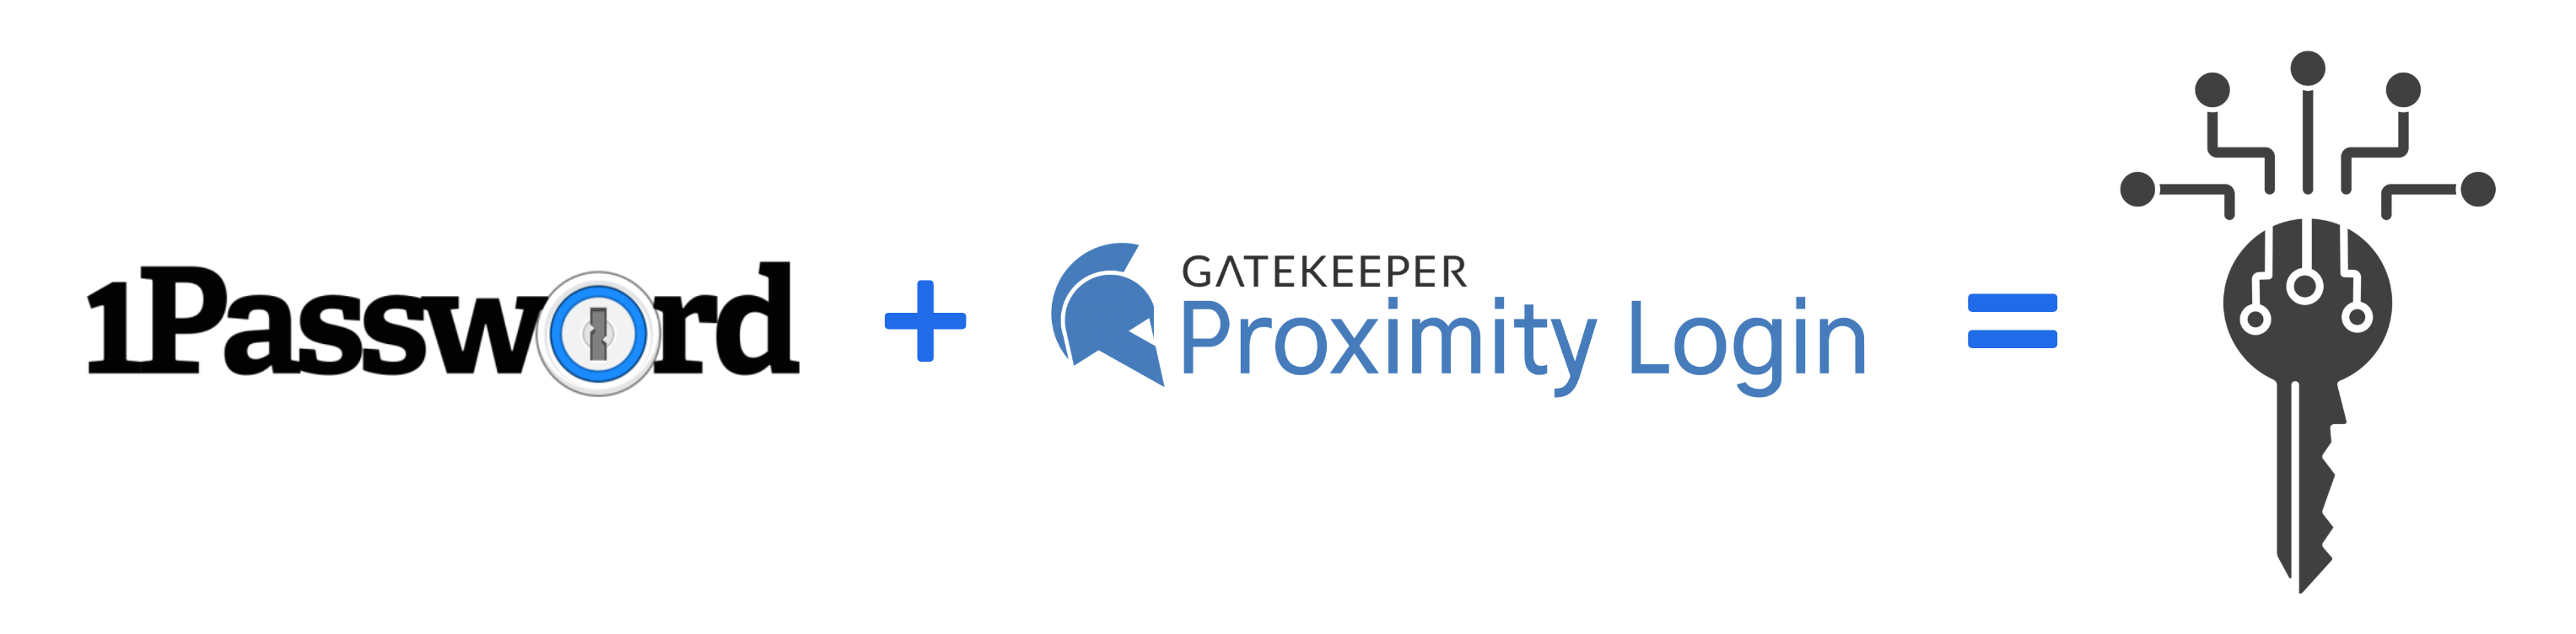 1Password_token_-_2FA_GateKeeper_Key.png